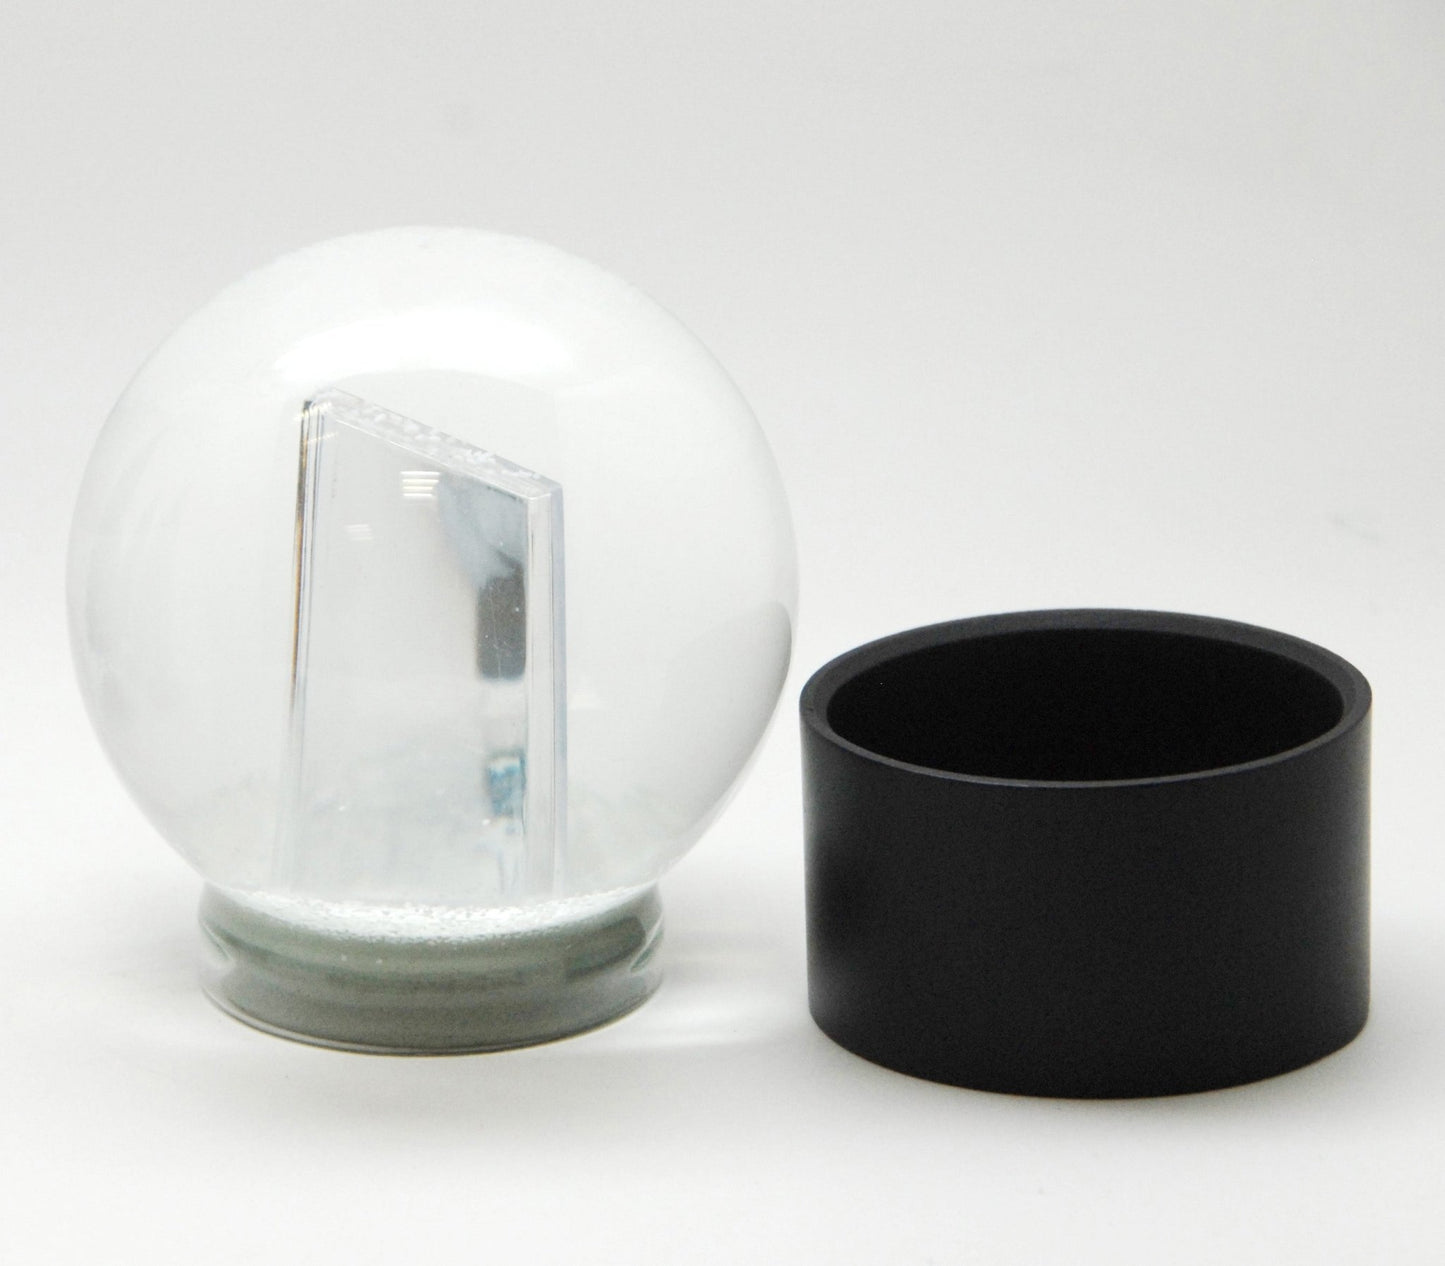 Bastelset mit 100mm Glas für DIY-Schneekugel mit Fotoeinsatz mit Polyresin-Sockel schwarz rund - Schneekugelhaus